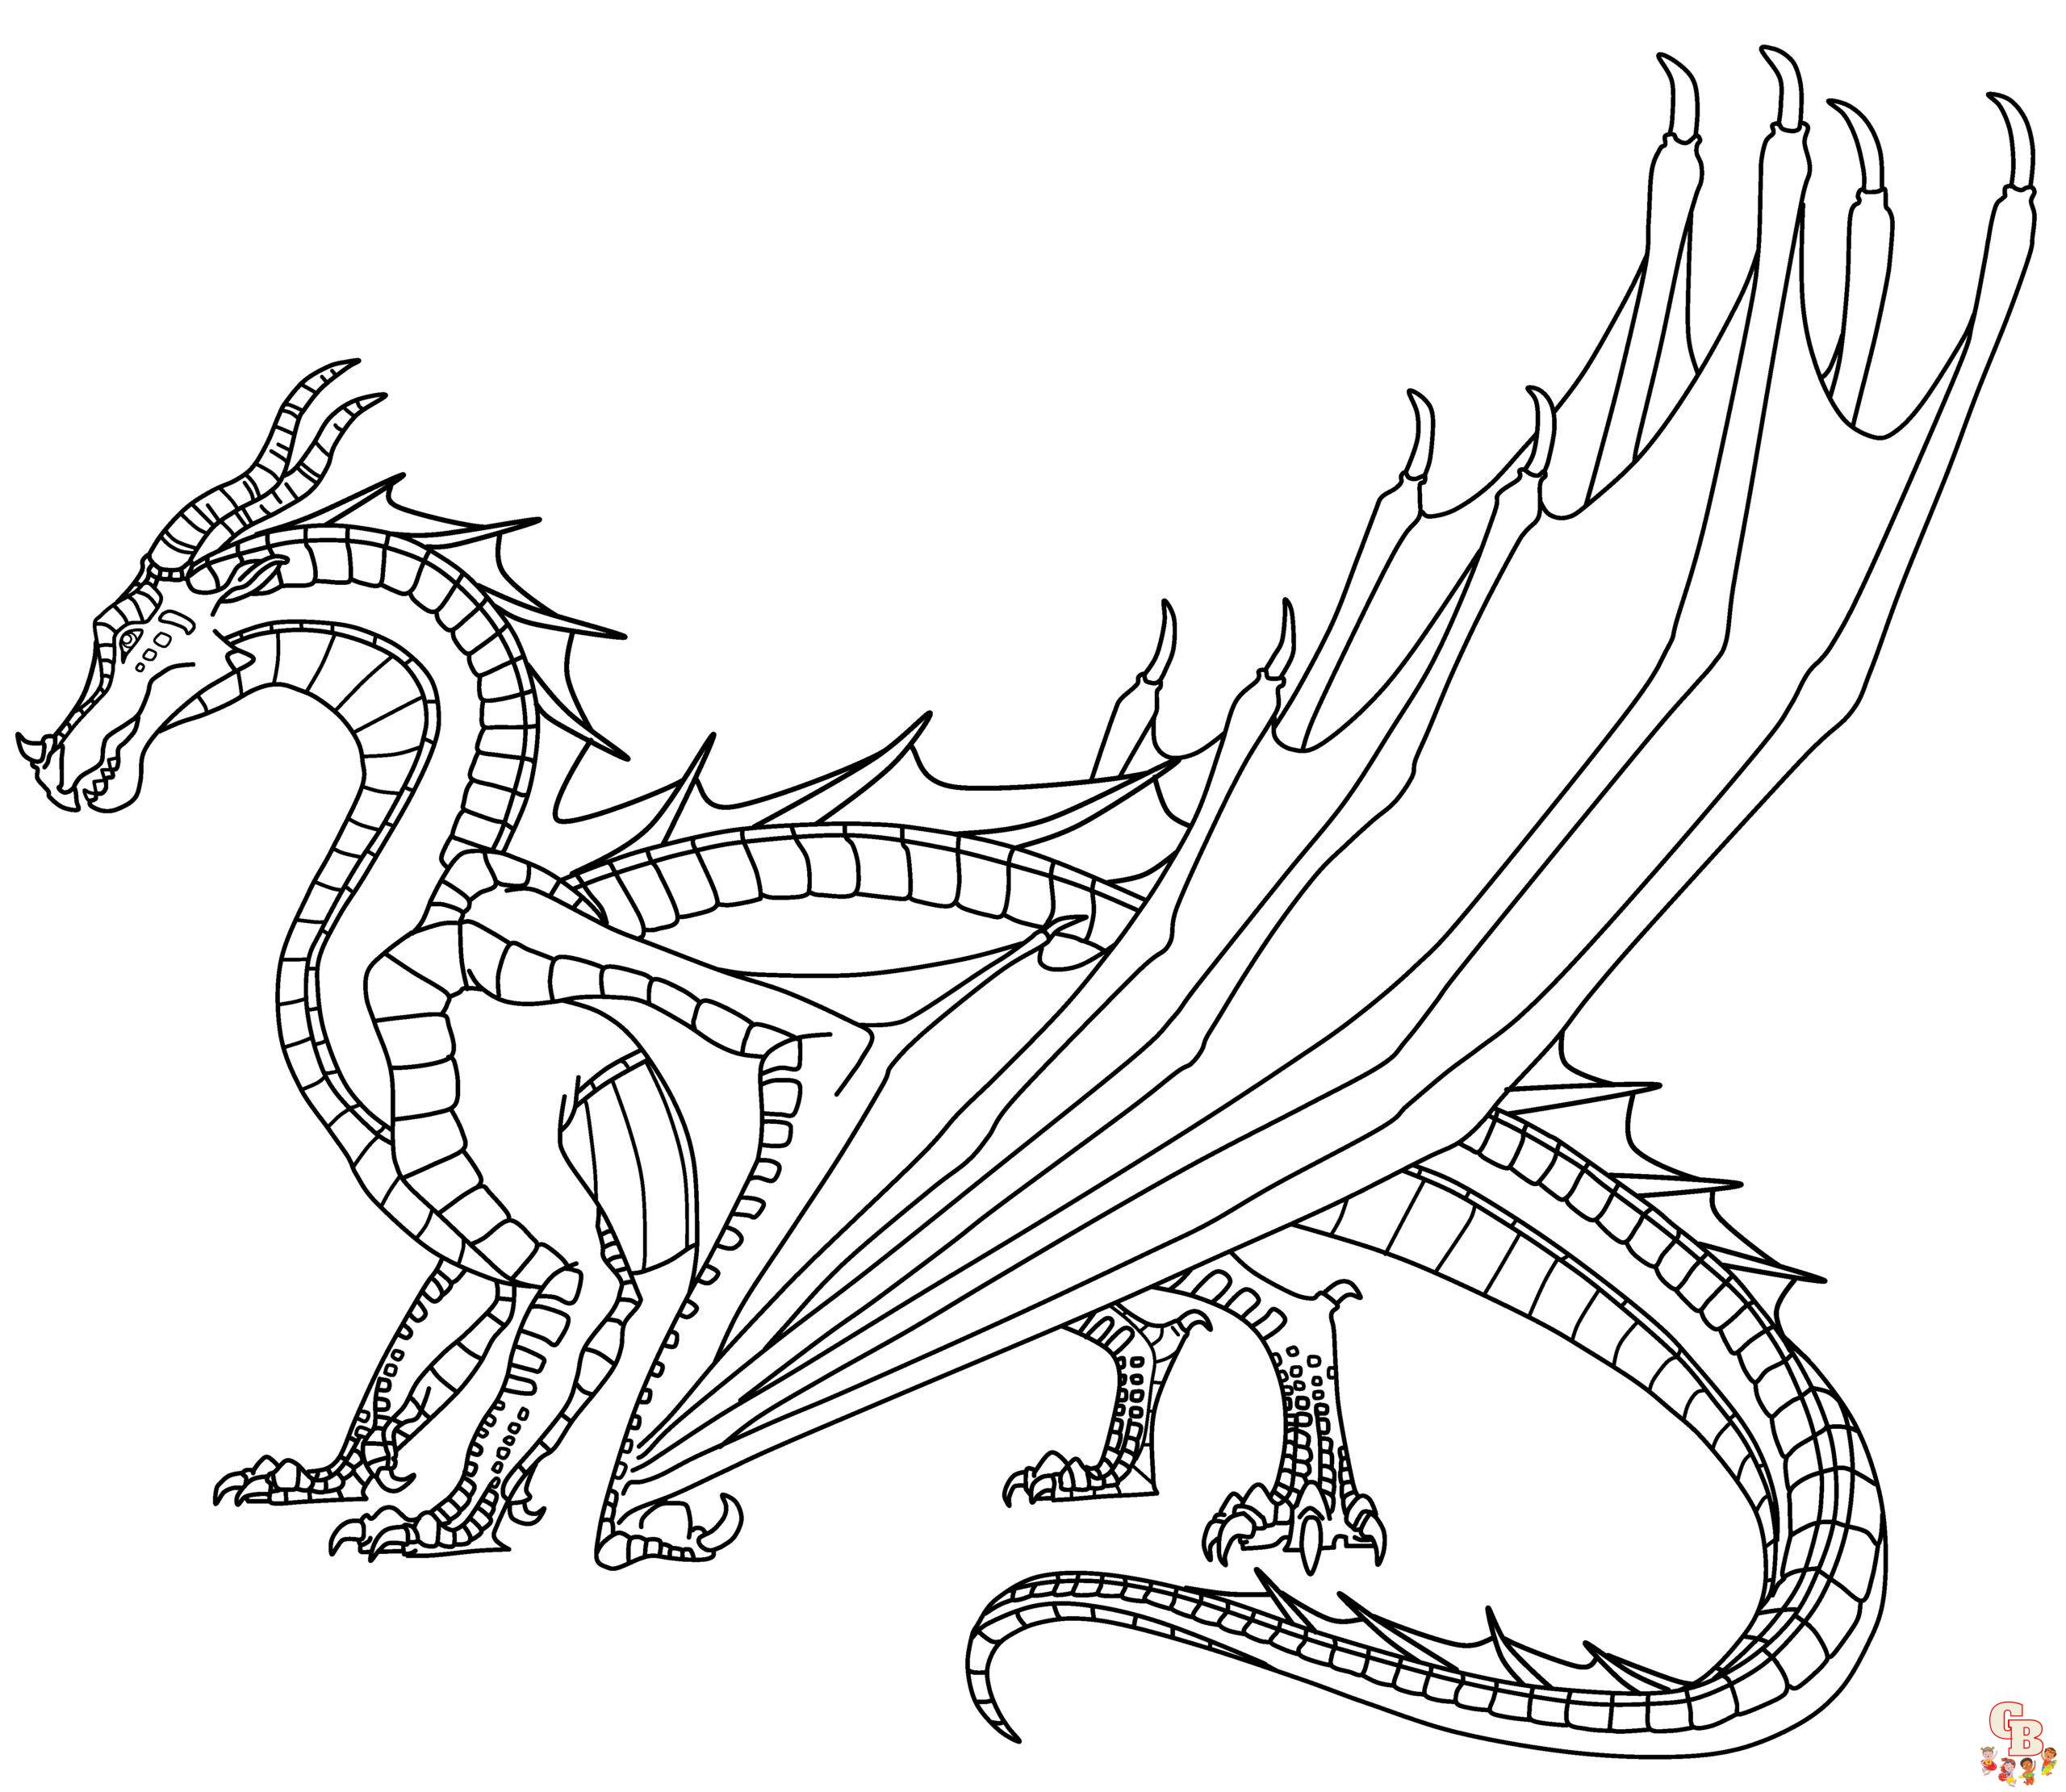 Ausmalbilder Mudwing Dragon von Wings of Fire 2